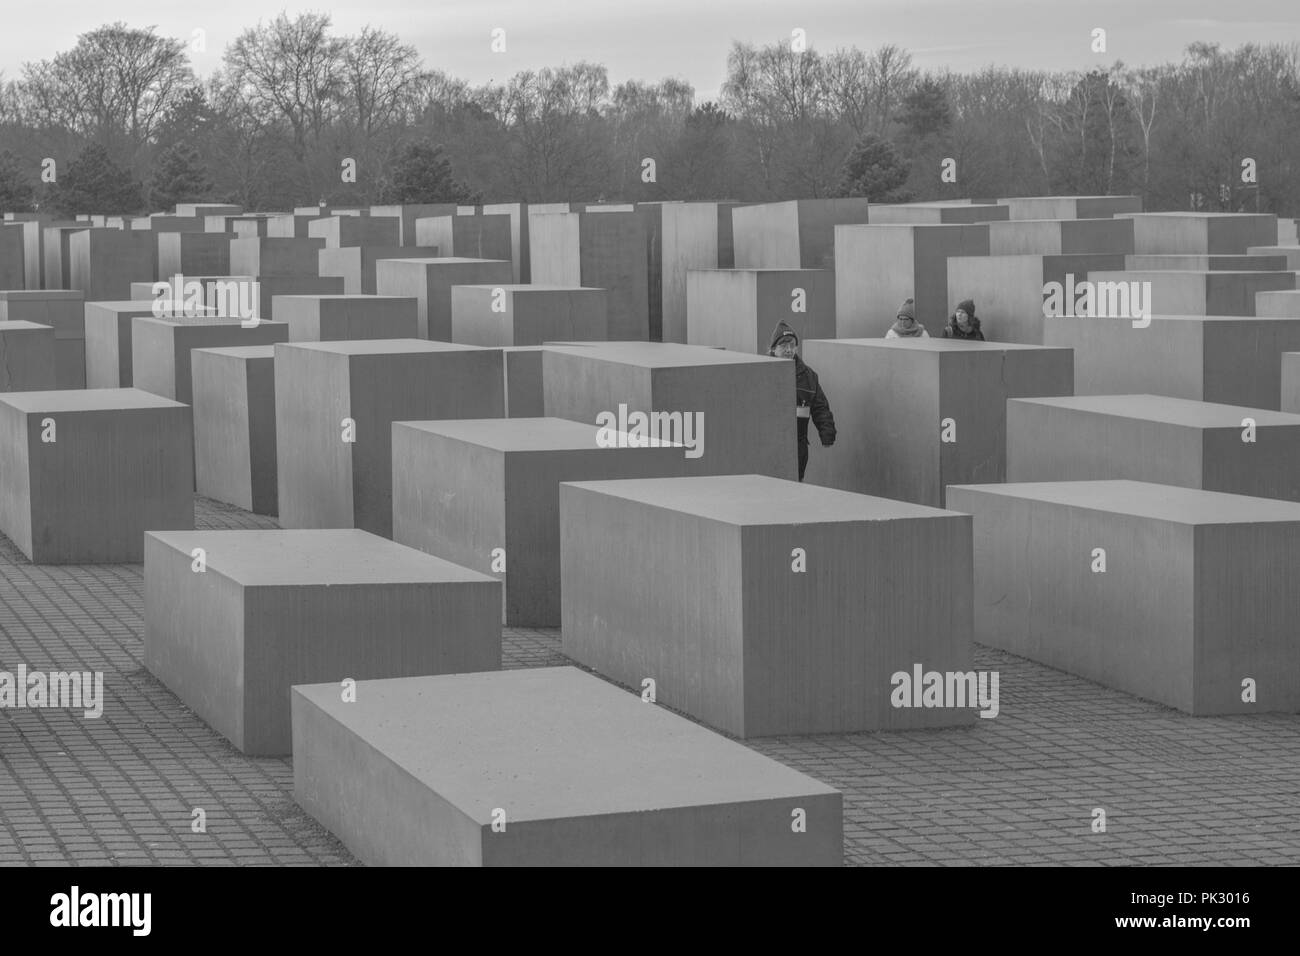 Denkmal für die ermordeten Juden Europas, Berlin, Denkmal für die ermordeten Juden Europas das Denkmal von judes Berlin Stockfoto